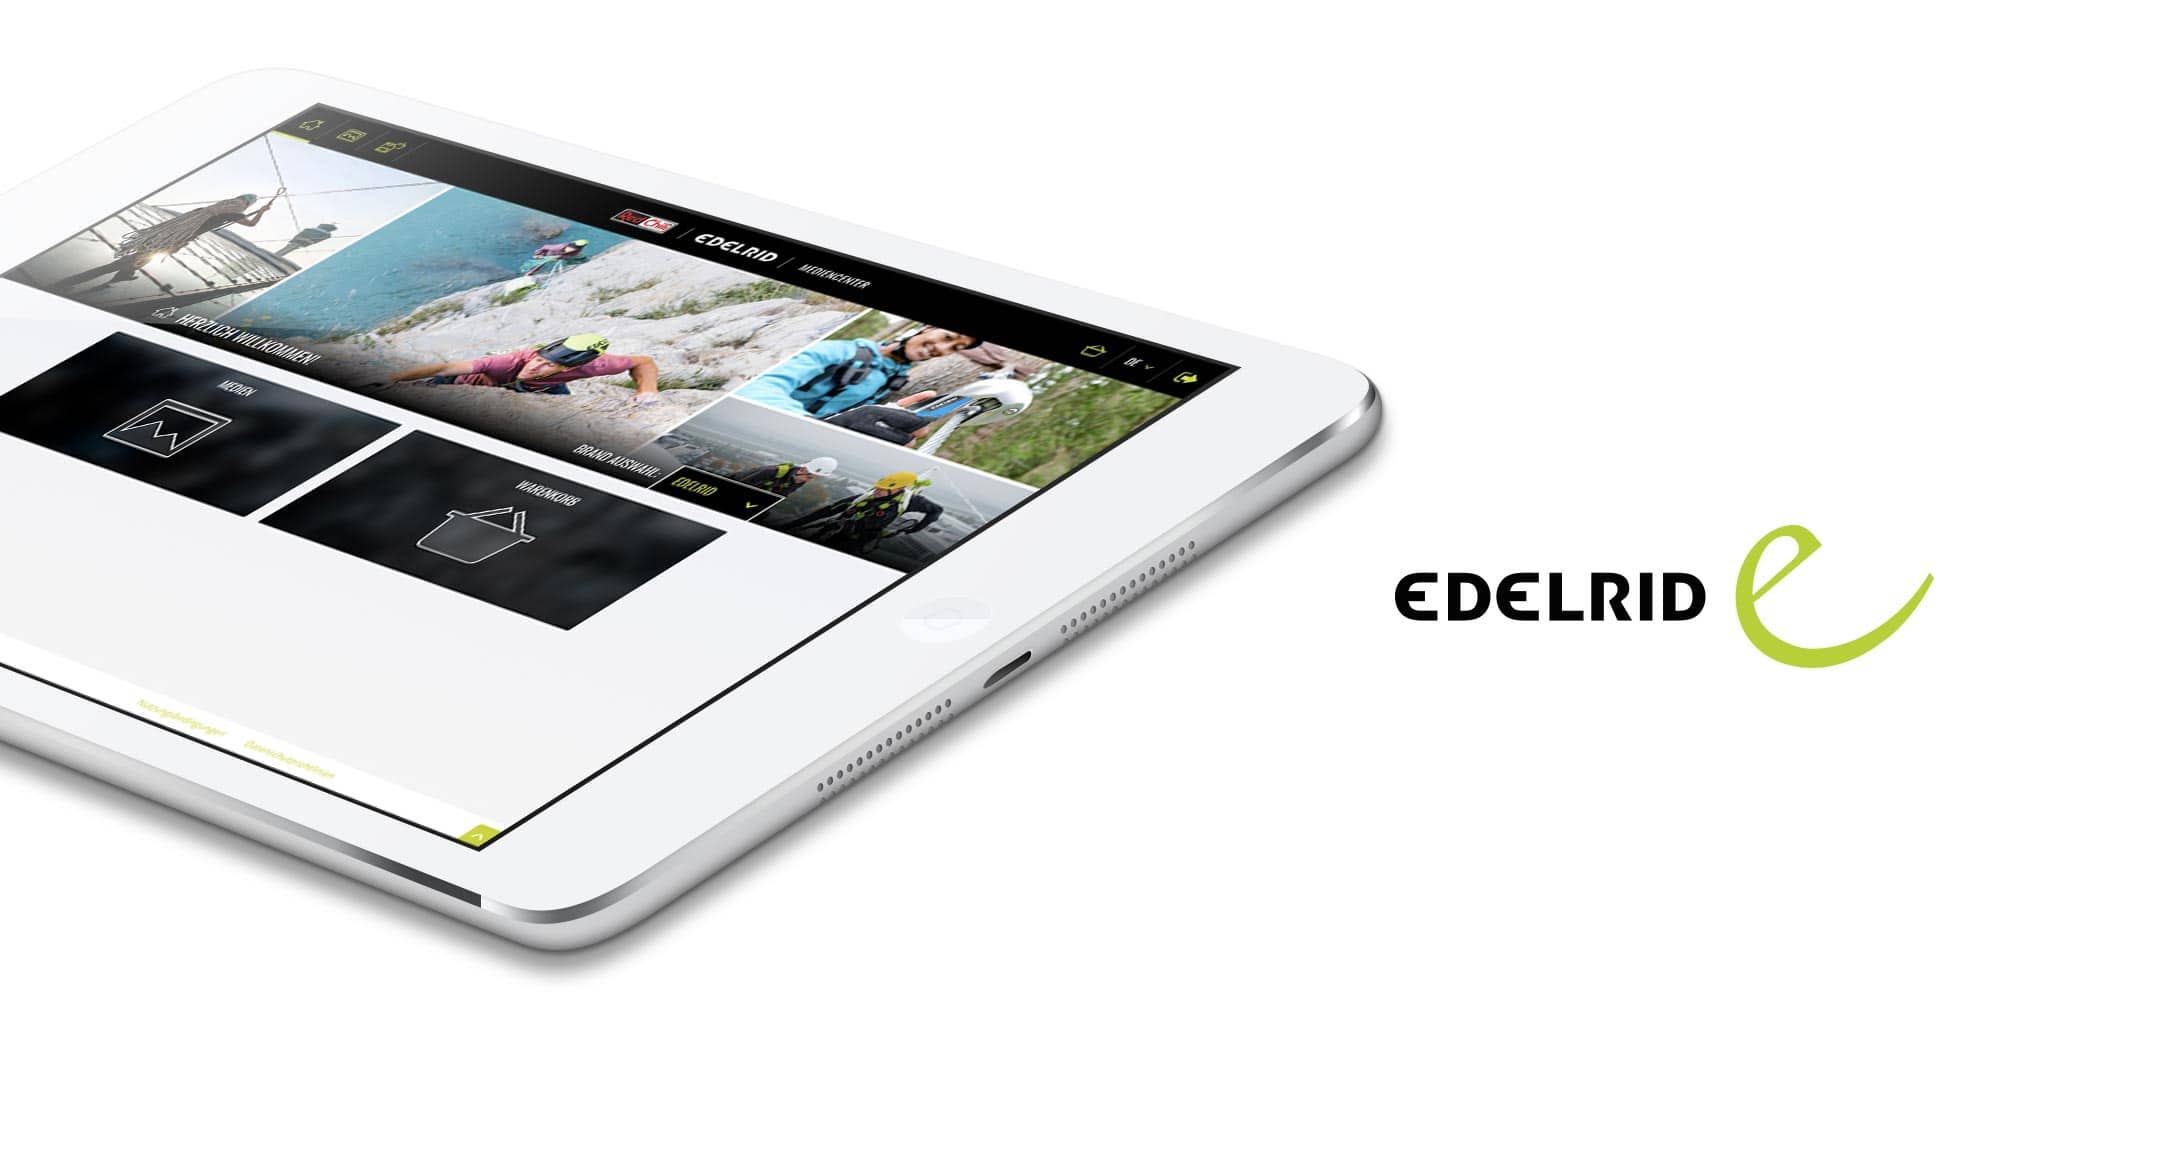 Edelrid Digital Media Center